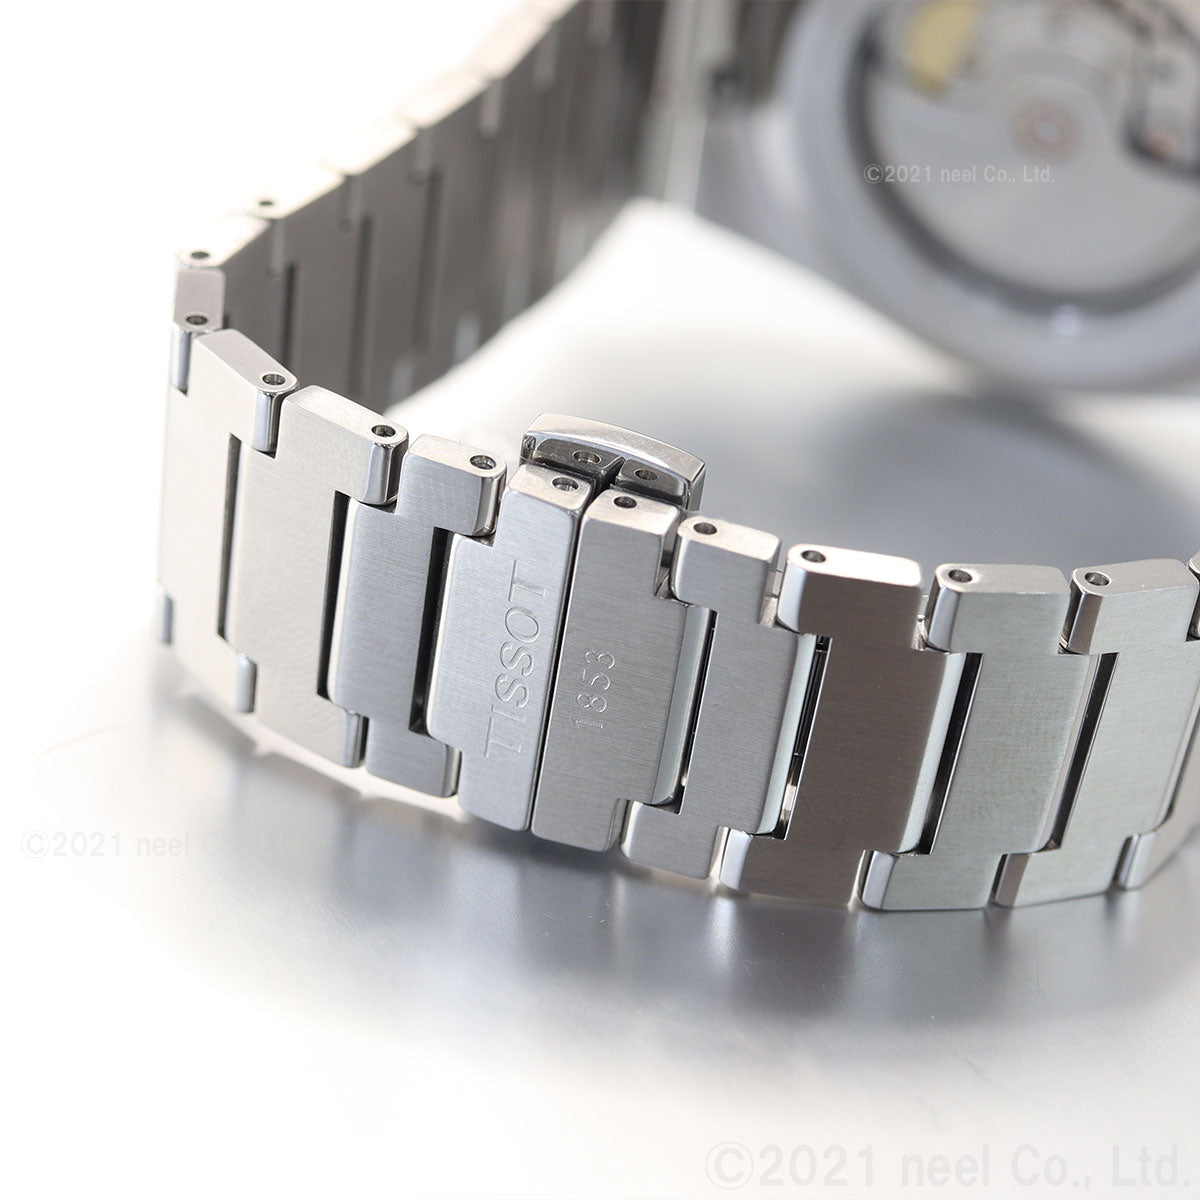 【36回分割手数料無料！】ティソ メンズ 腕時計 TISSOT PRX オートマティック 自動巻 T137.407.11.051.00 AUTOMATIC ブラック シルバー